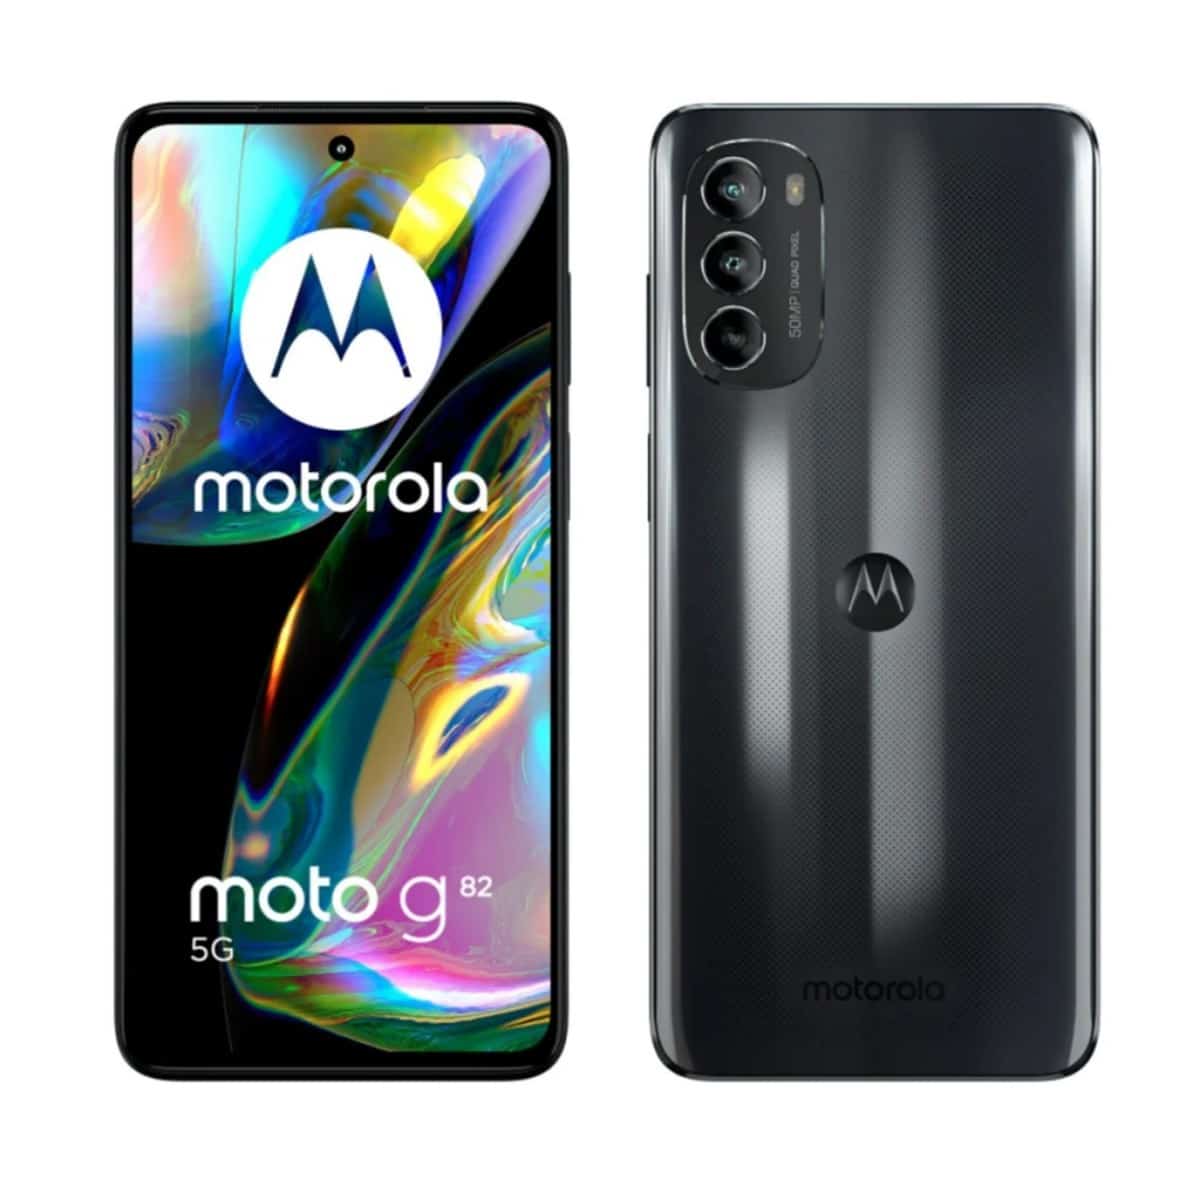 Mercado Libre remata el Motorola G82 con oferta del 40% 